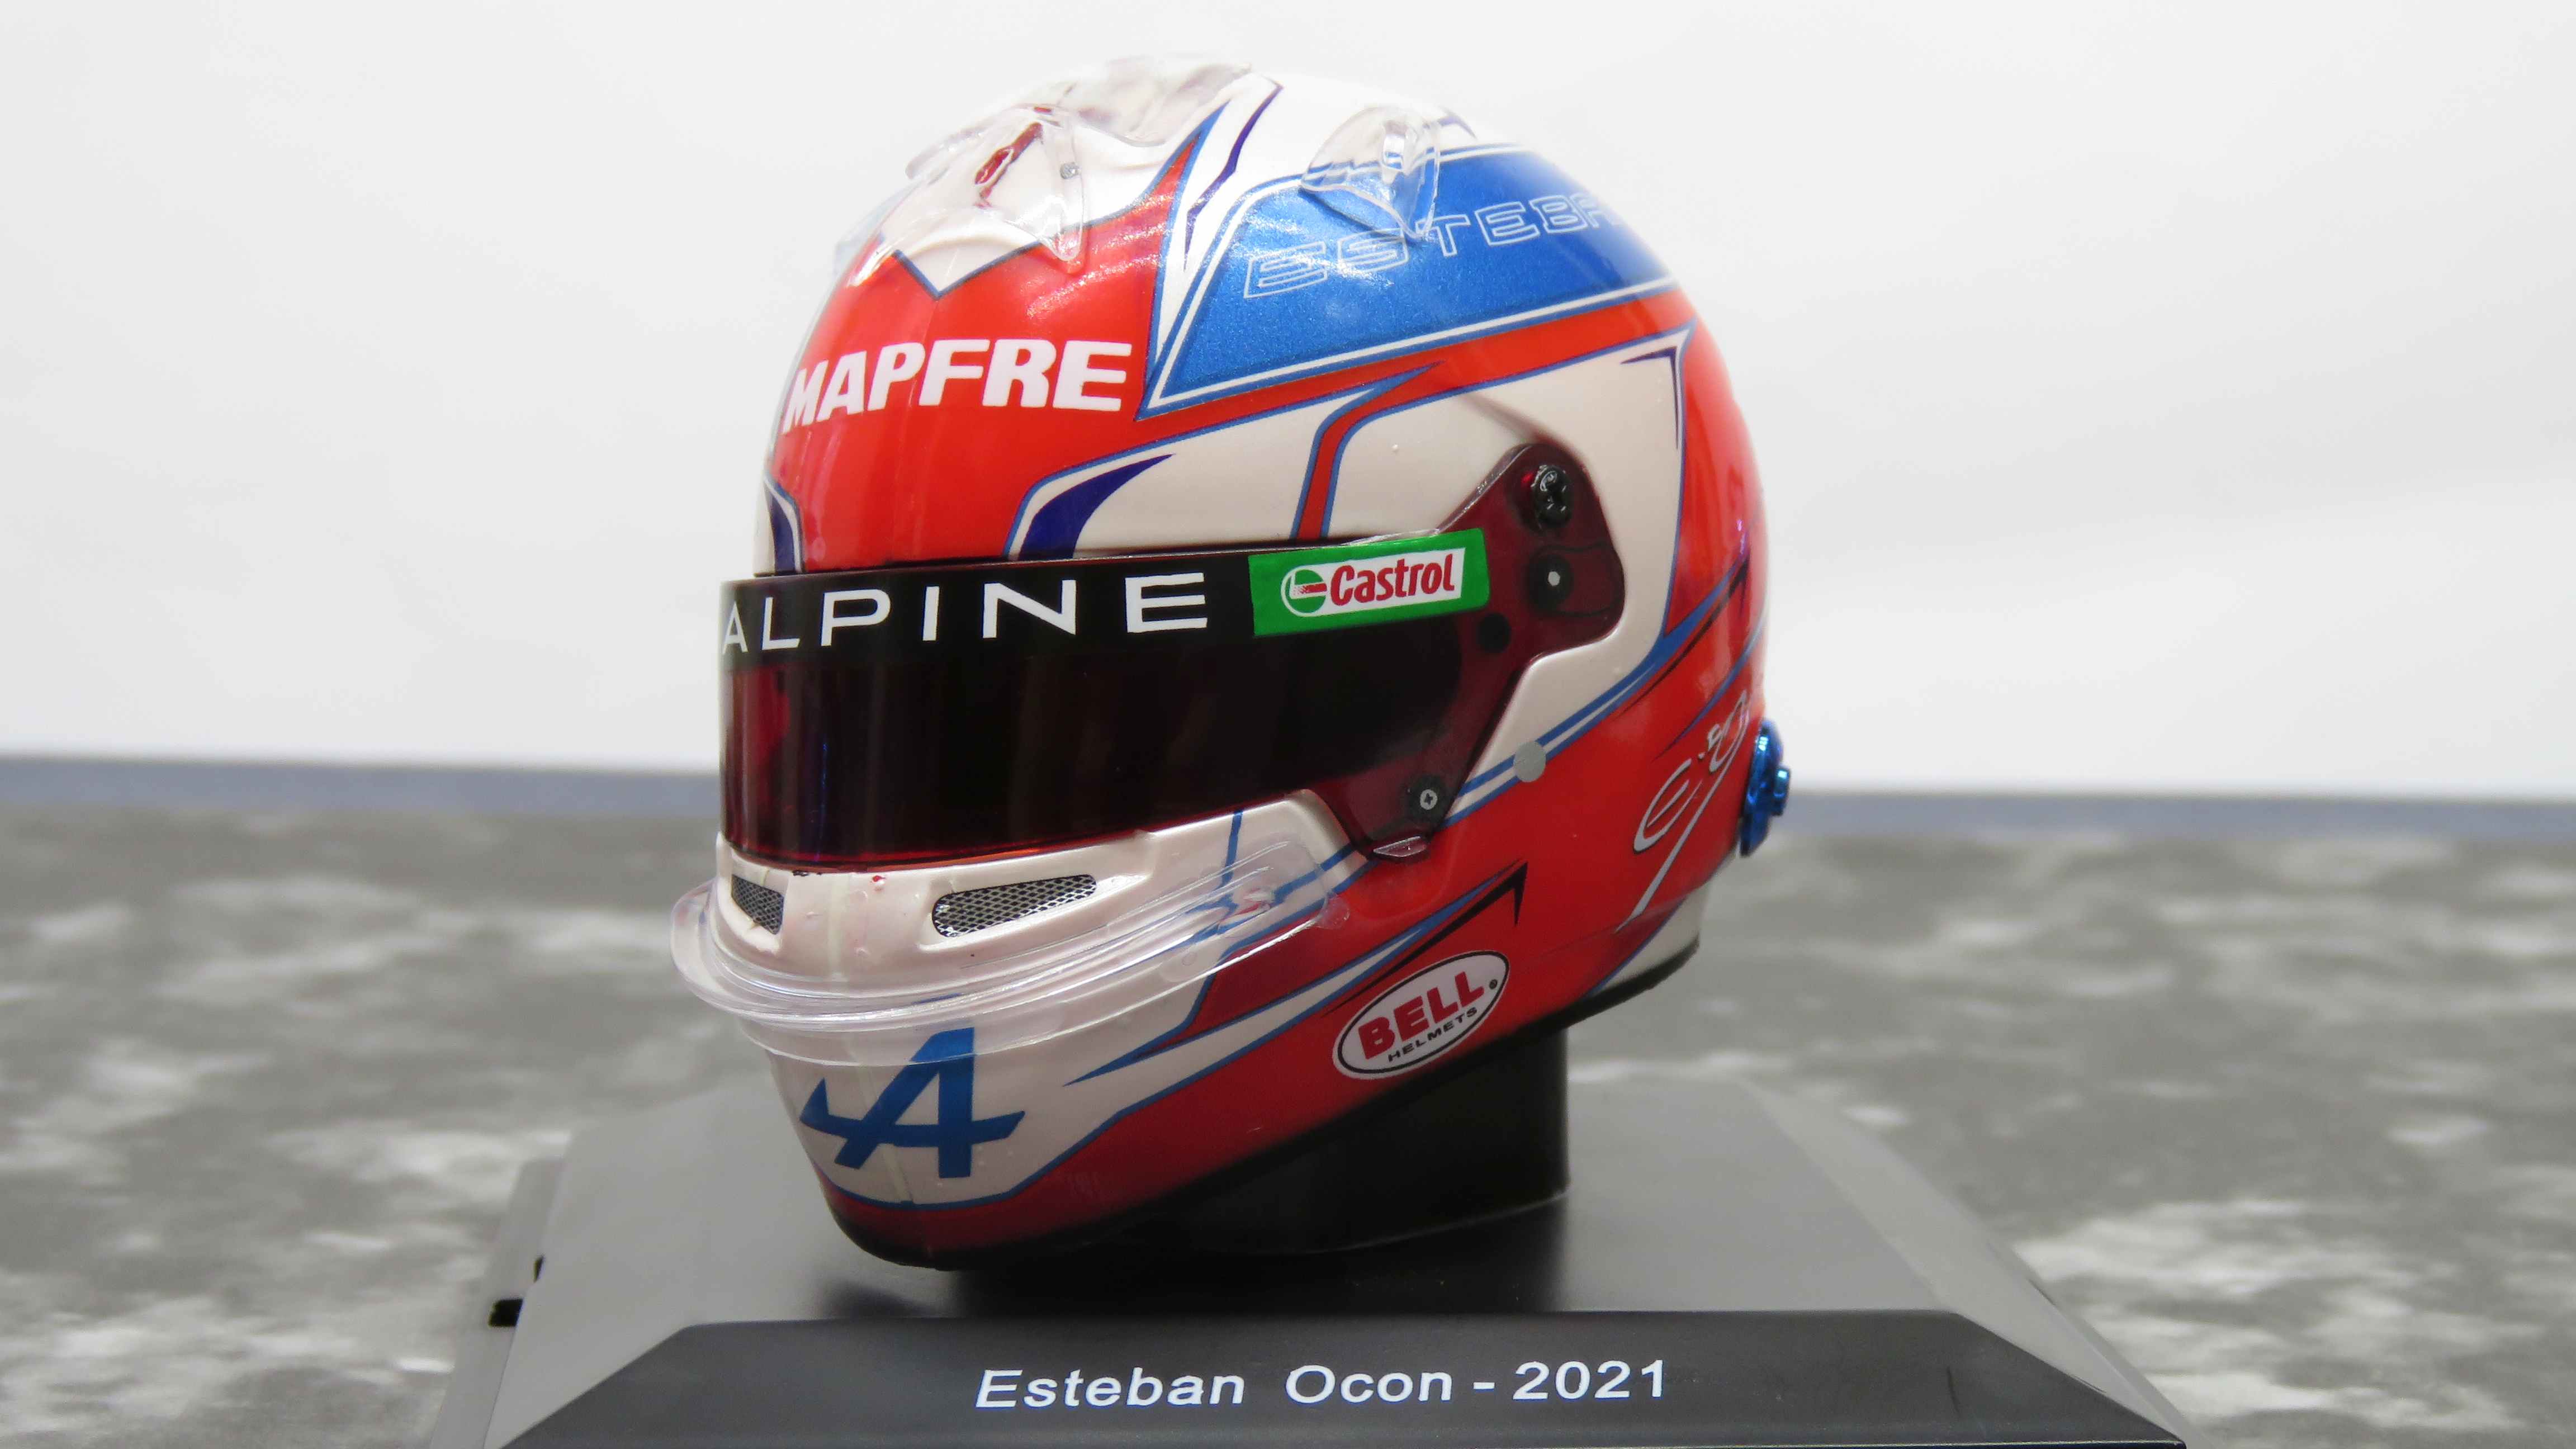 Esteban Ocon - Alpine - 2021 /Spark 5HF060 1:5 sisak/